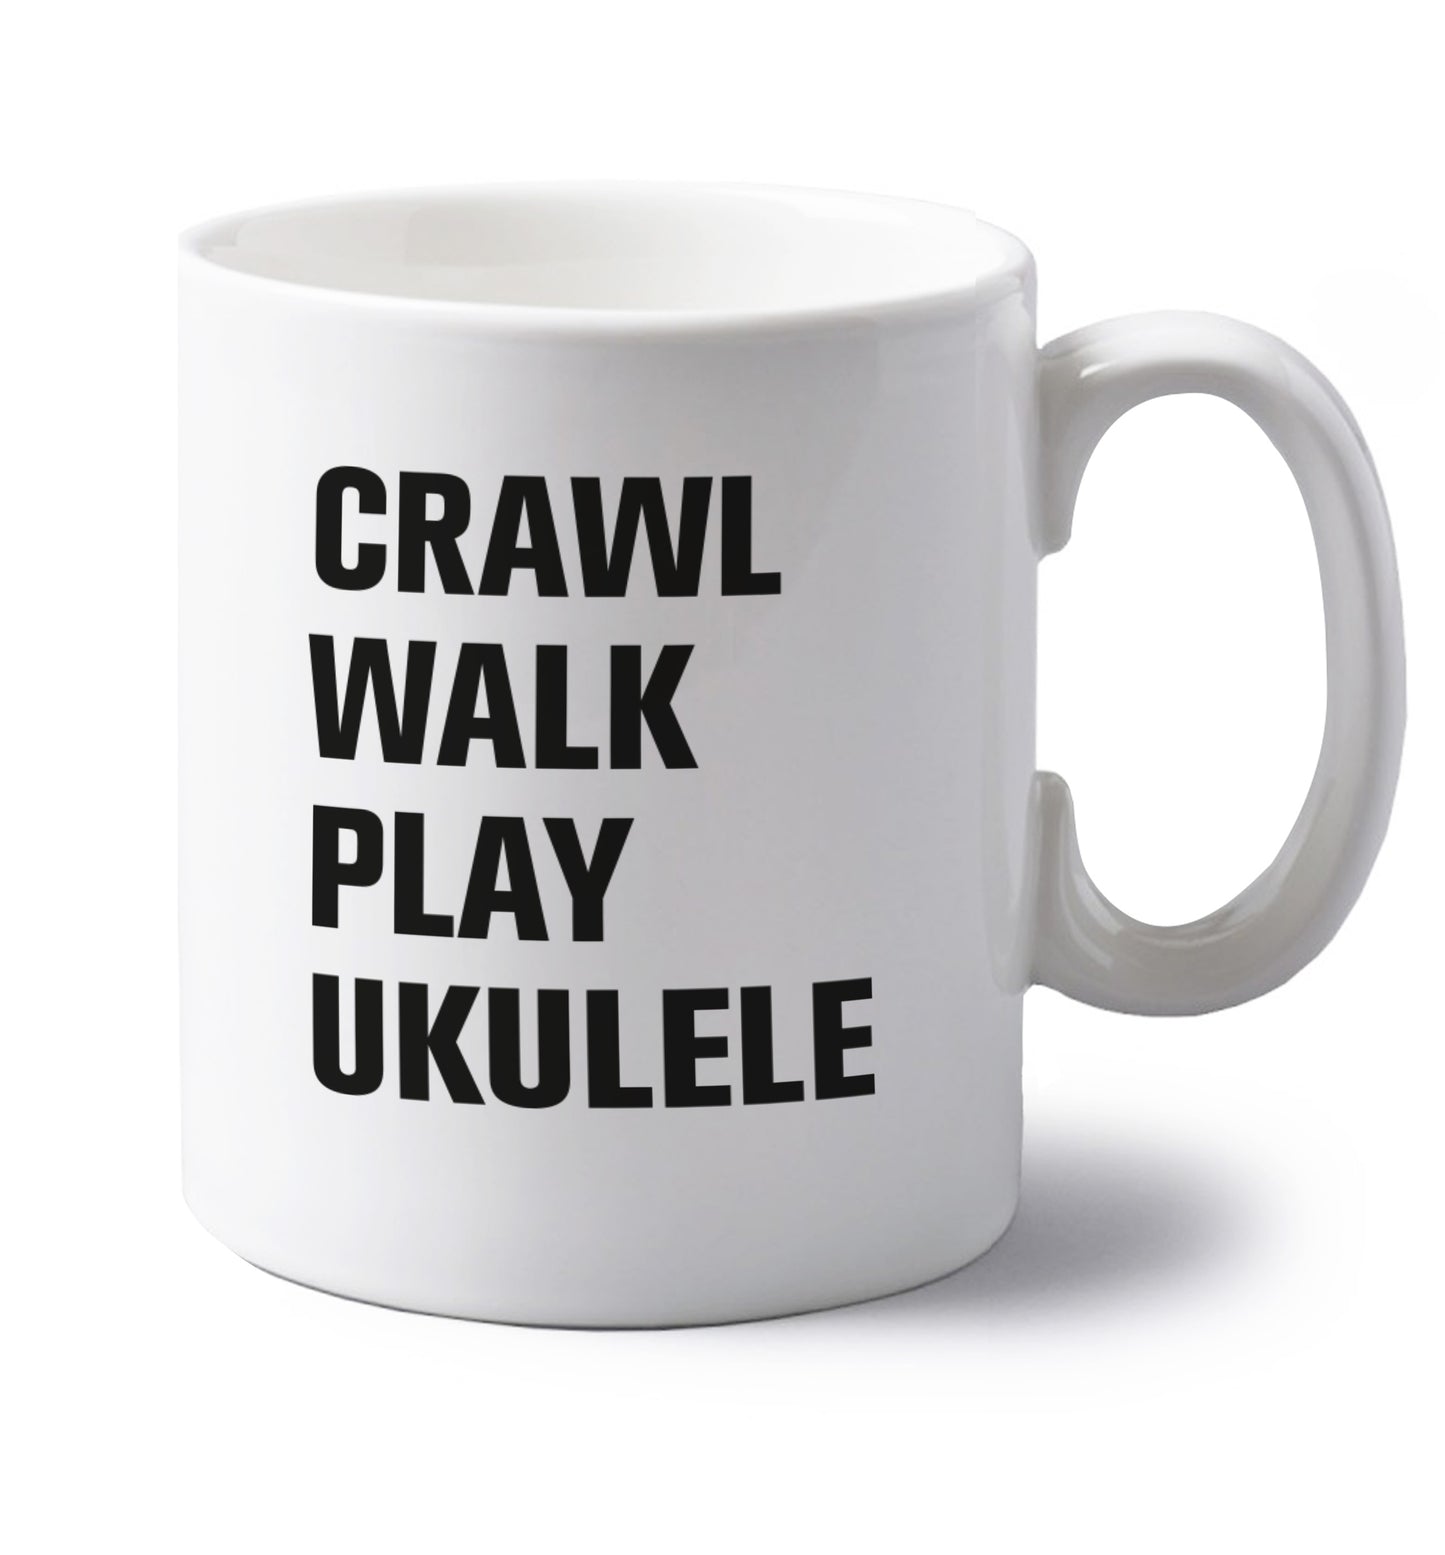 Crawl walk play ukulele left handed white ceramic mug 